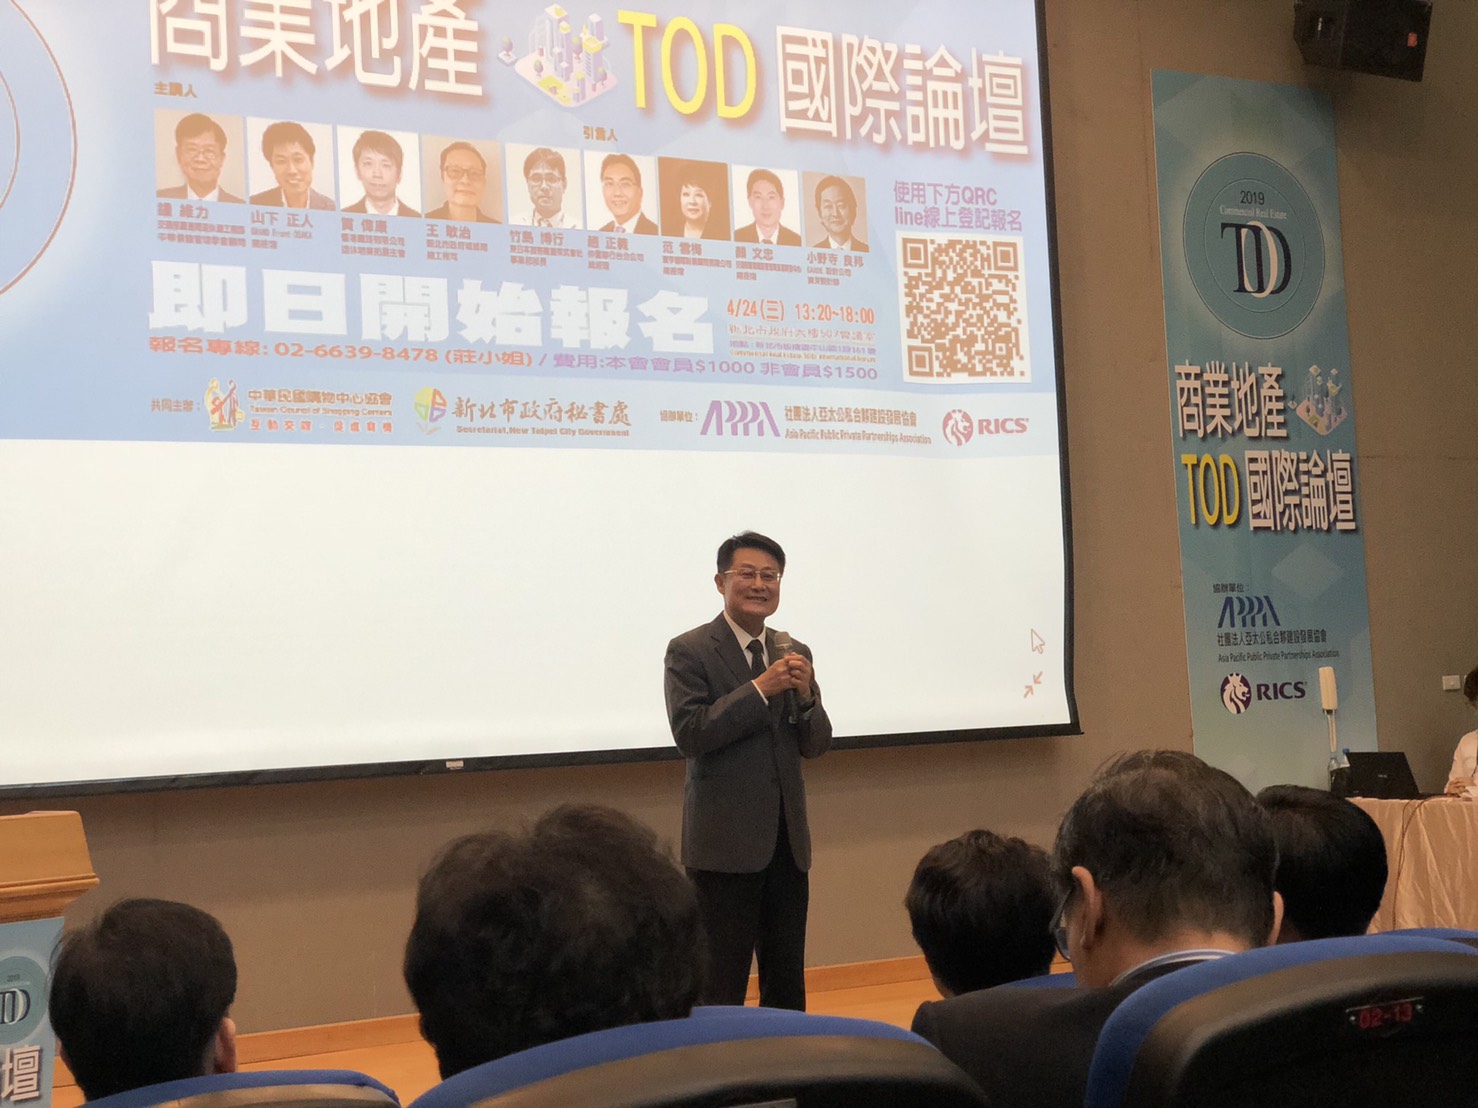 副市長陳純敬於商業產地TOD論壇致詞並歡迎產業投資新北